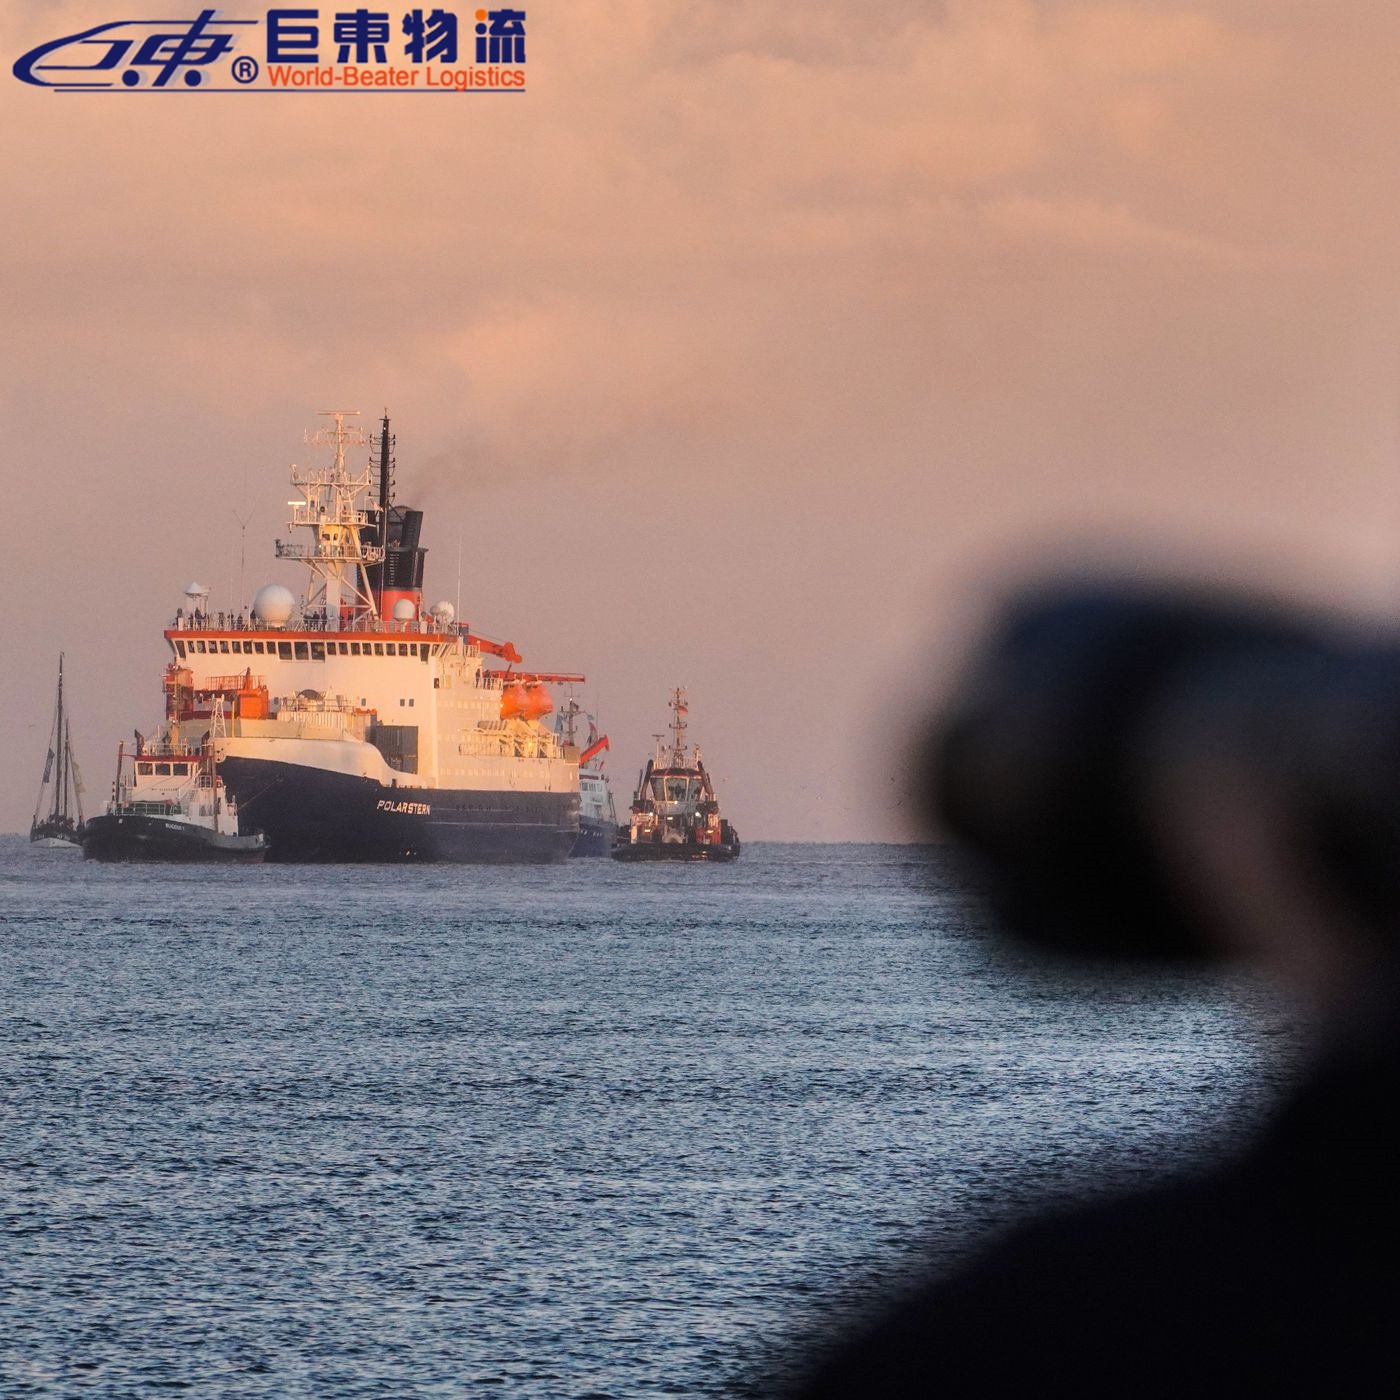 潍坊菲律宾海运双清专线 fba空运专线和海运快递物流 巨东物流13年海运服务专业可靠